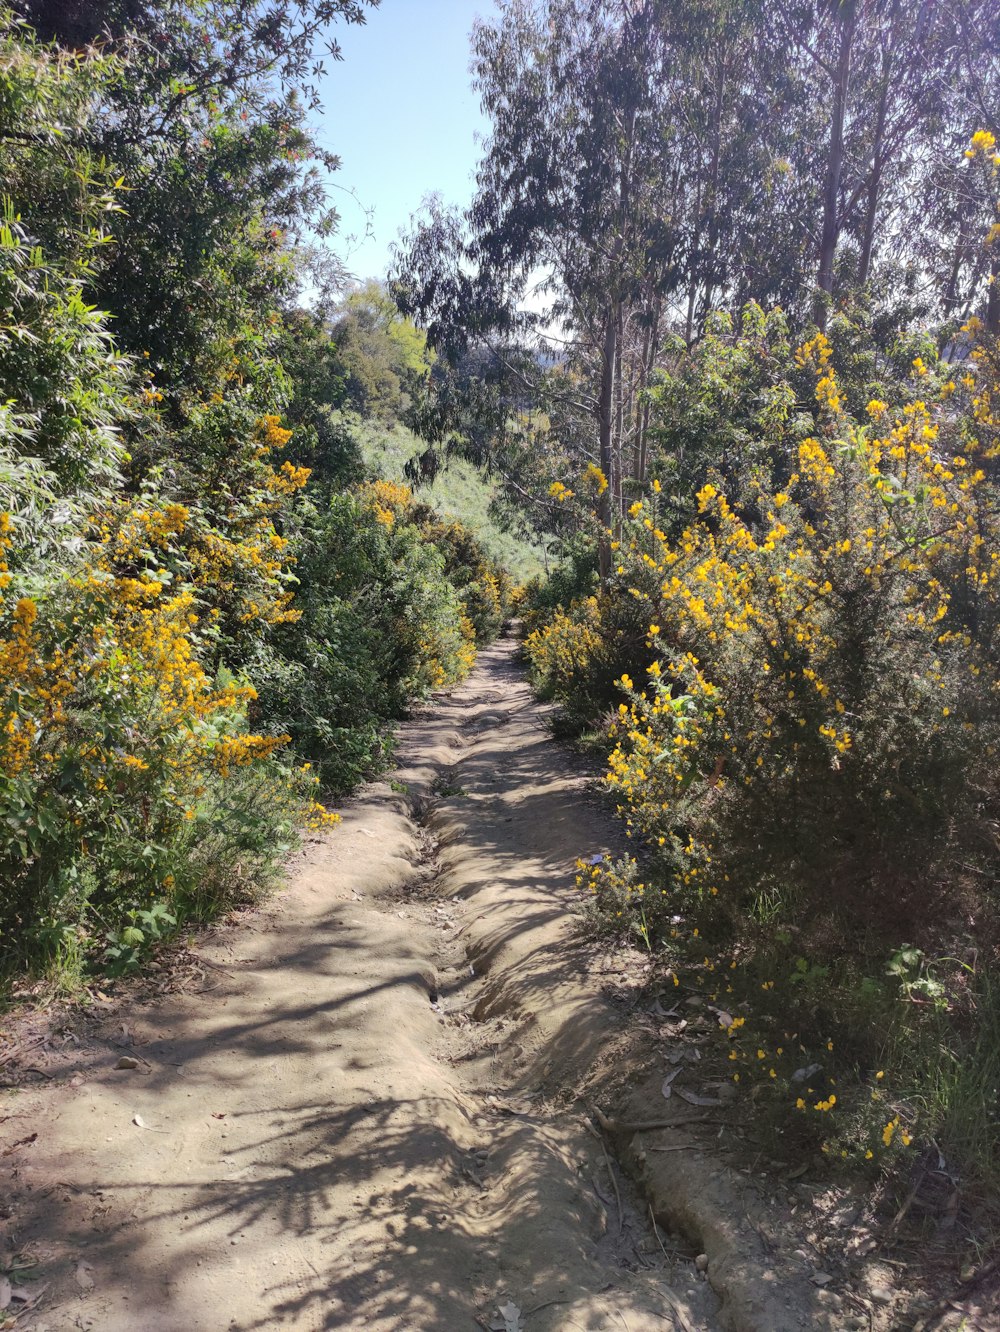 un chemin de terre entouré d’arbres et de fleurs jaunes